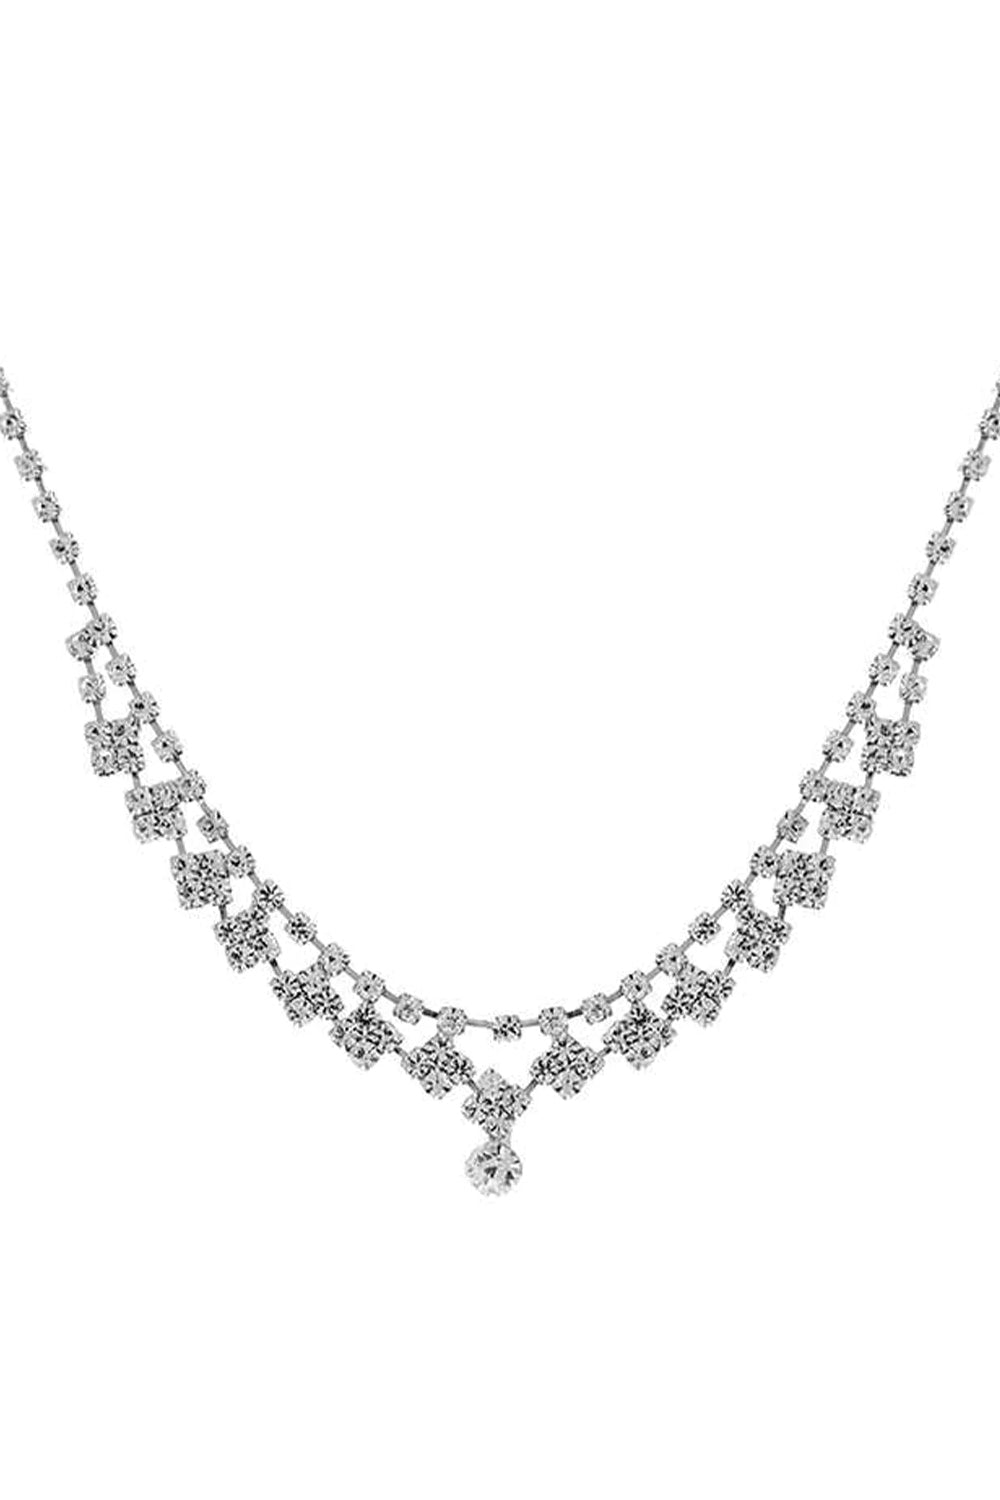 Stylish Rhinestone Design Crystal Necklace